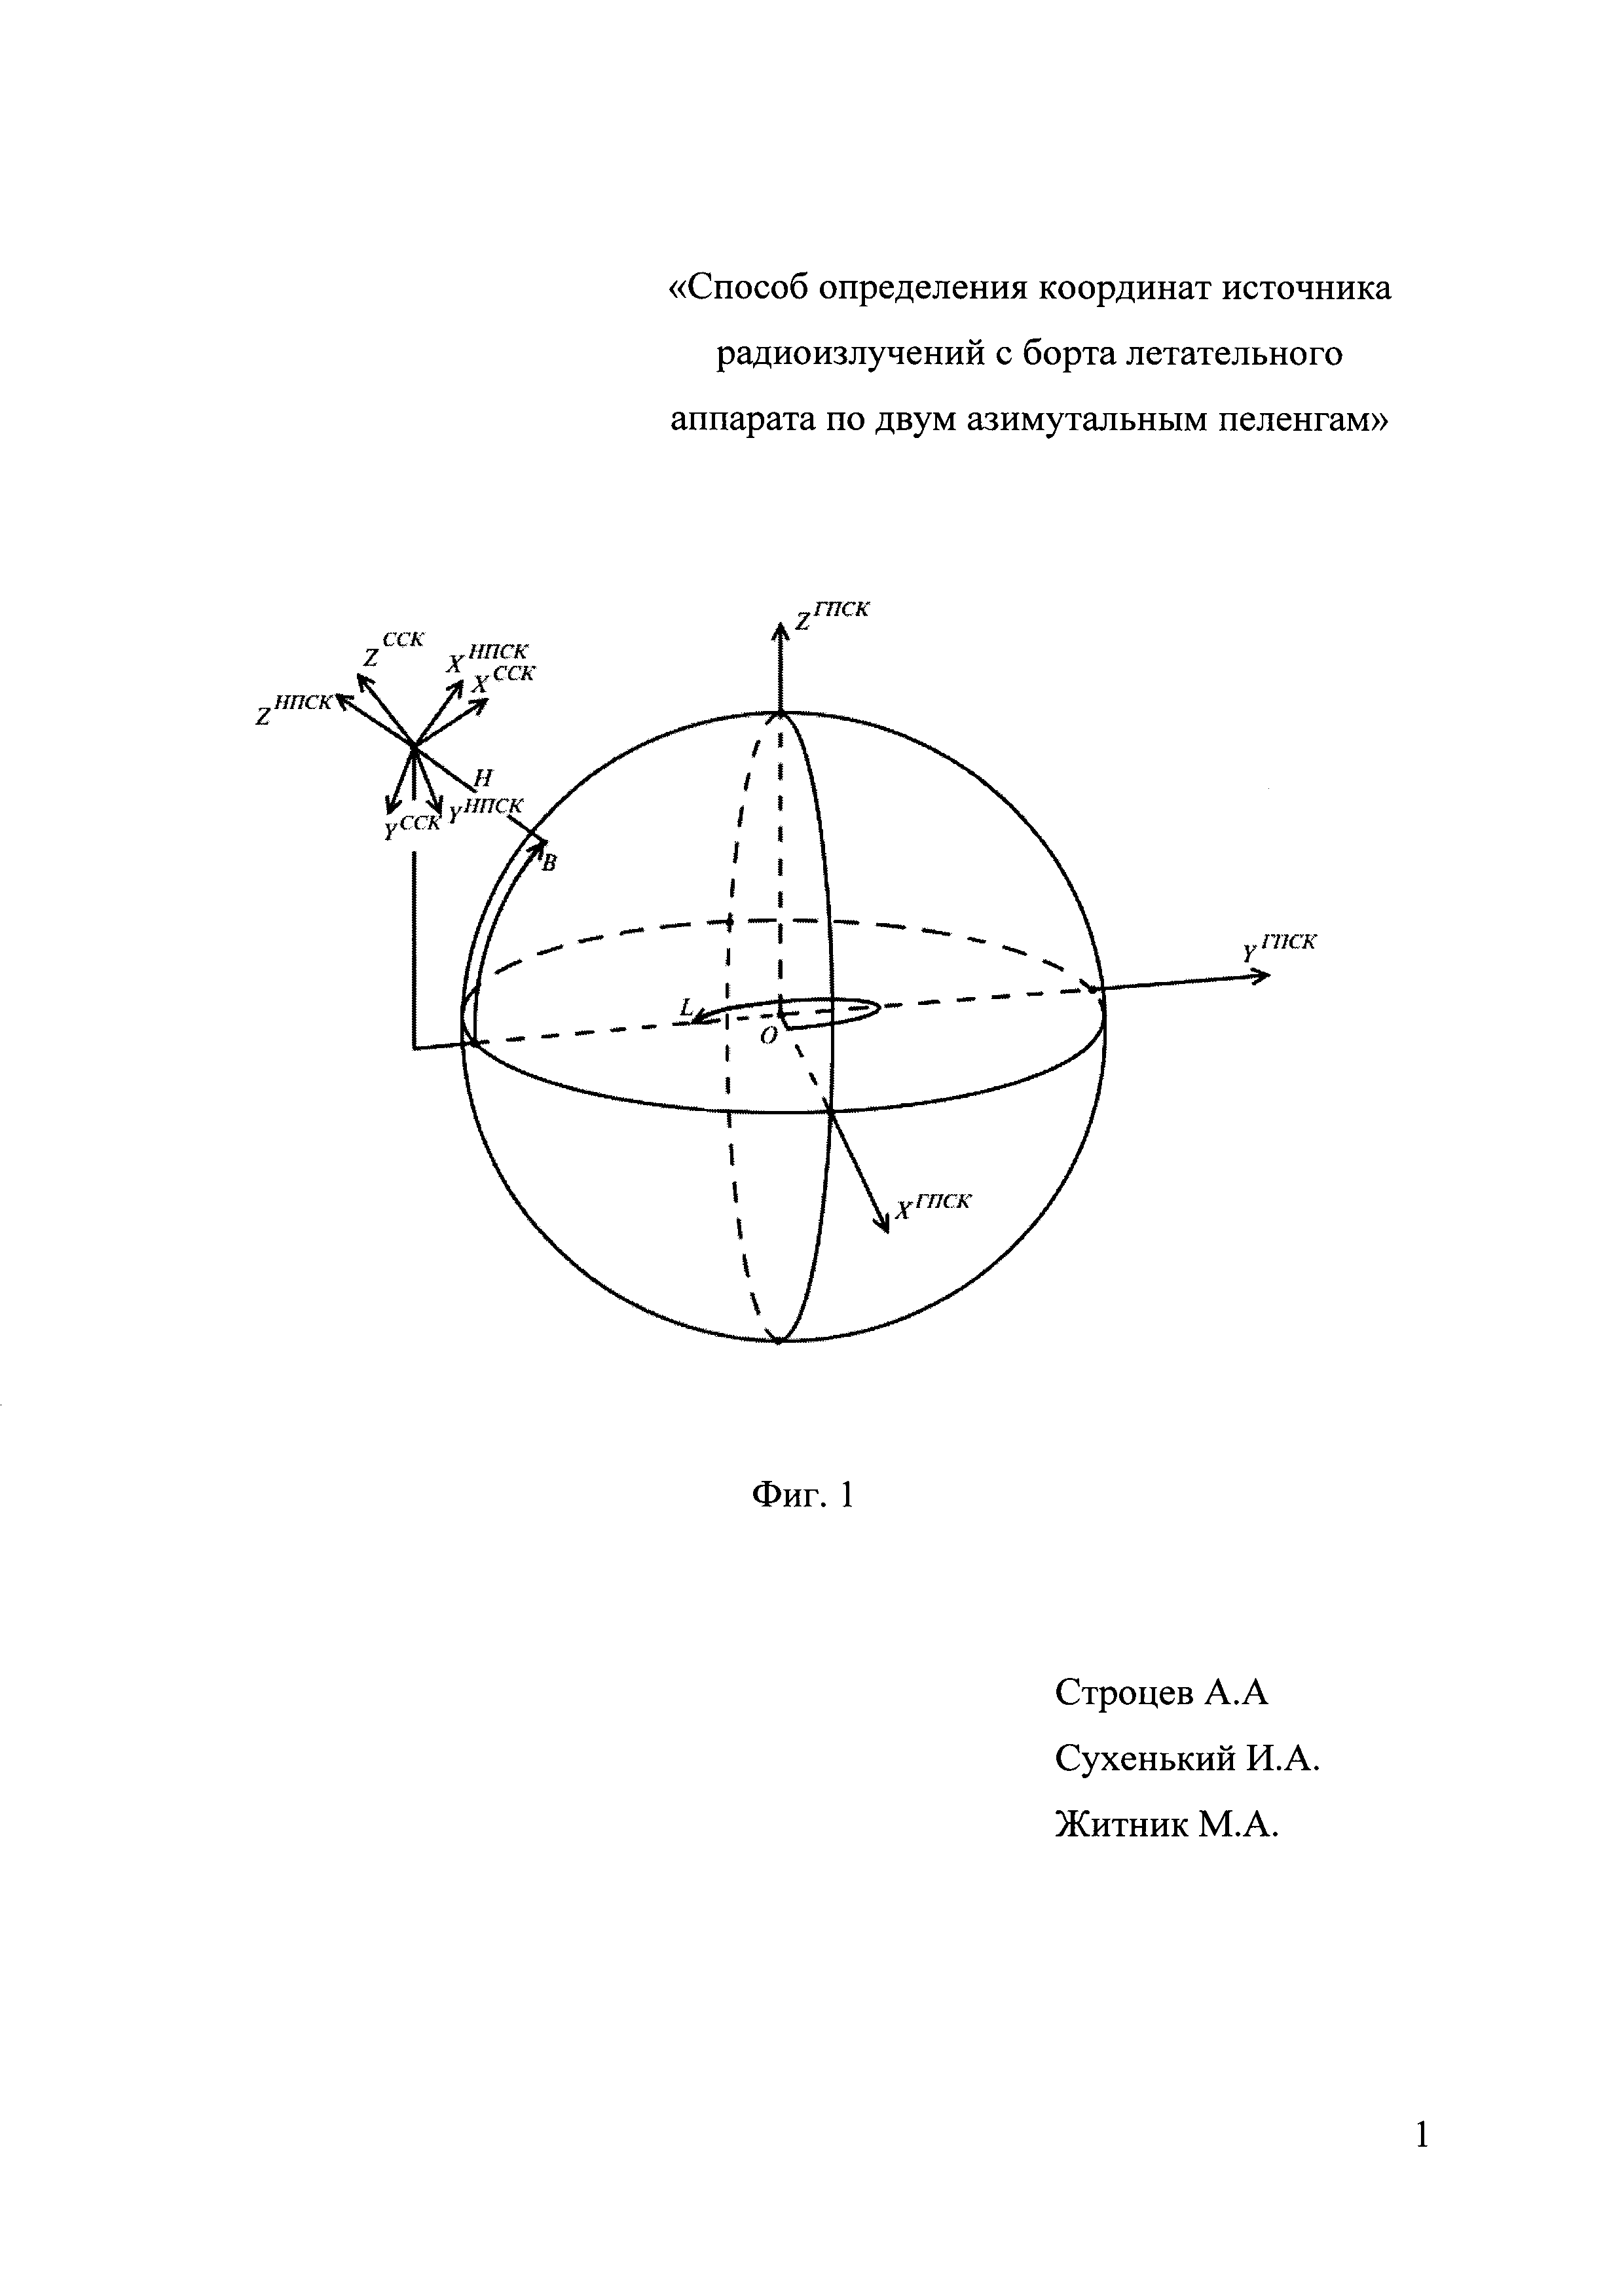 Способ определения координат источника радиоизлучений с борта летательного аппарата по двум азимутальным пеленгам